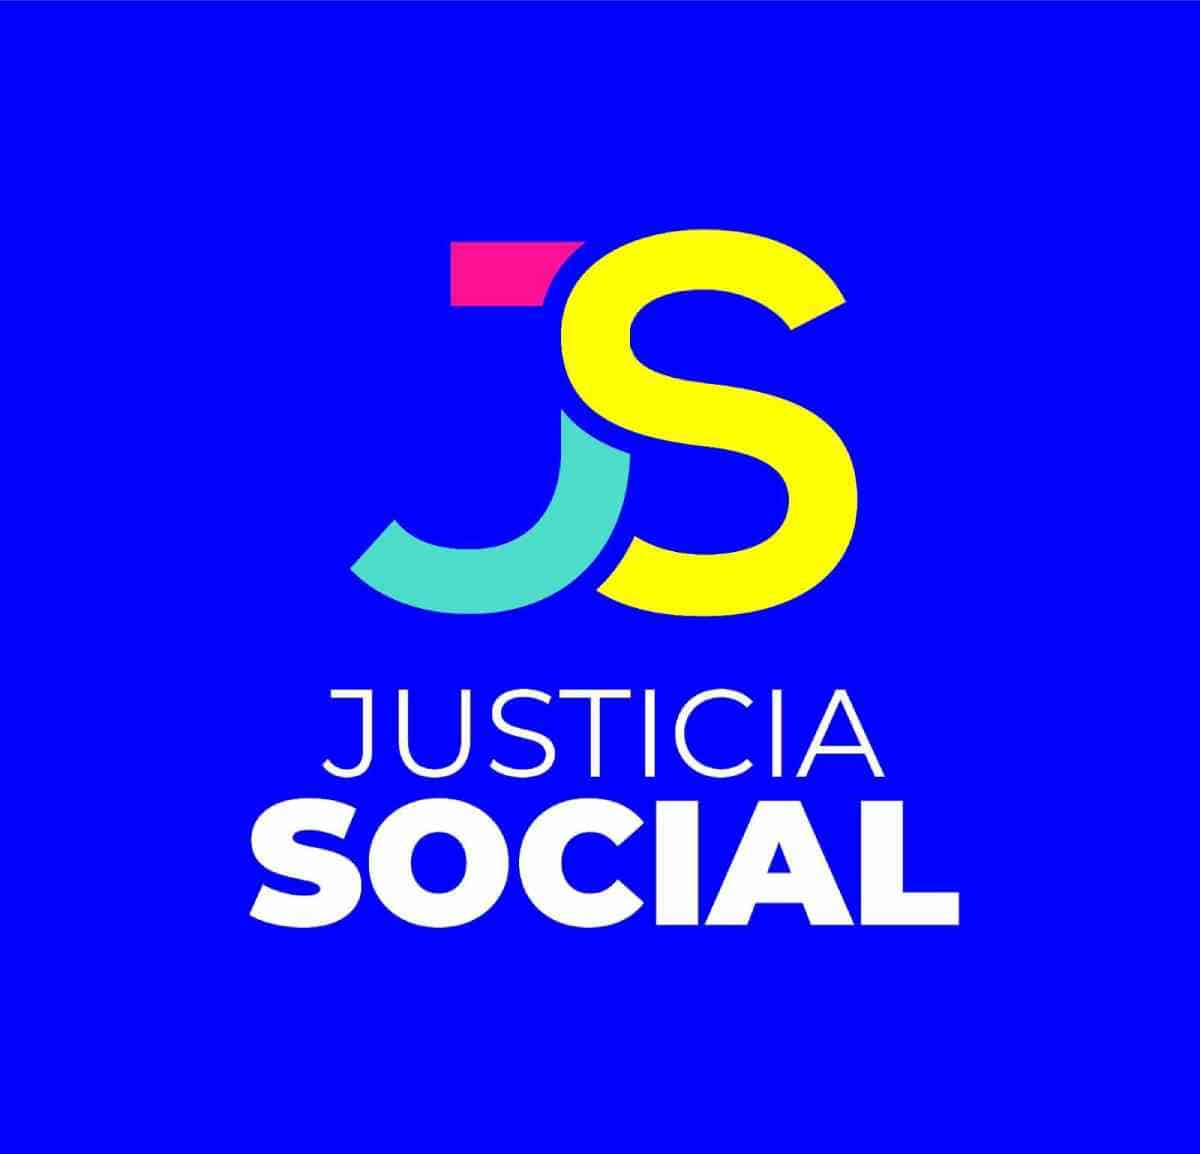 Justicia Social: Reconocido oficialmente como partido político en la República Dominicana